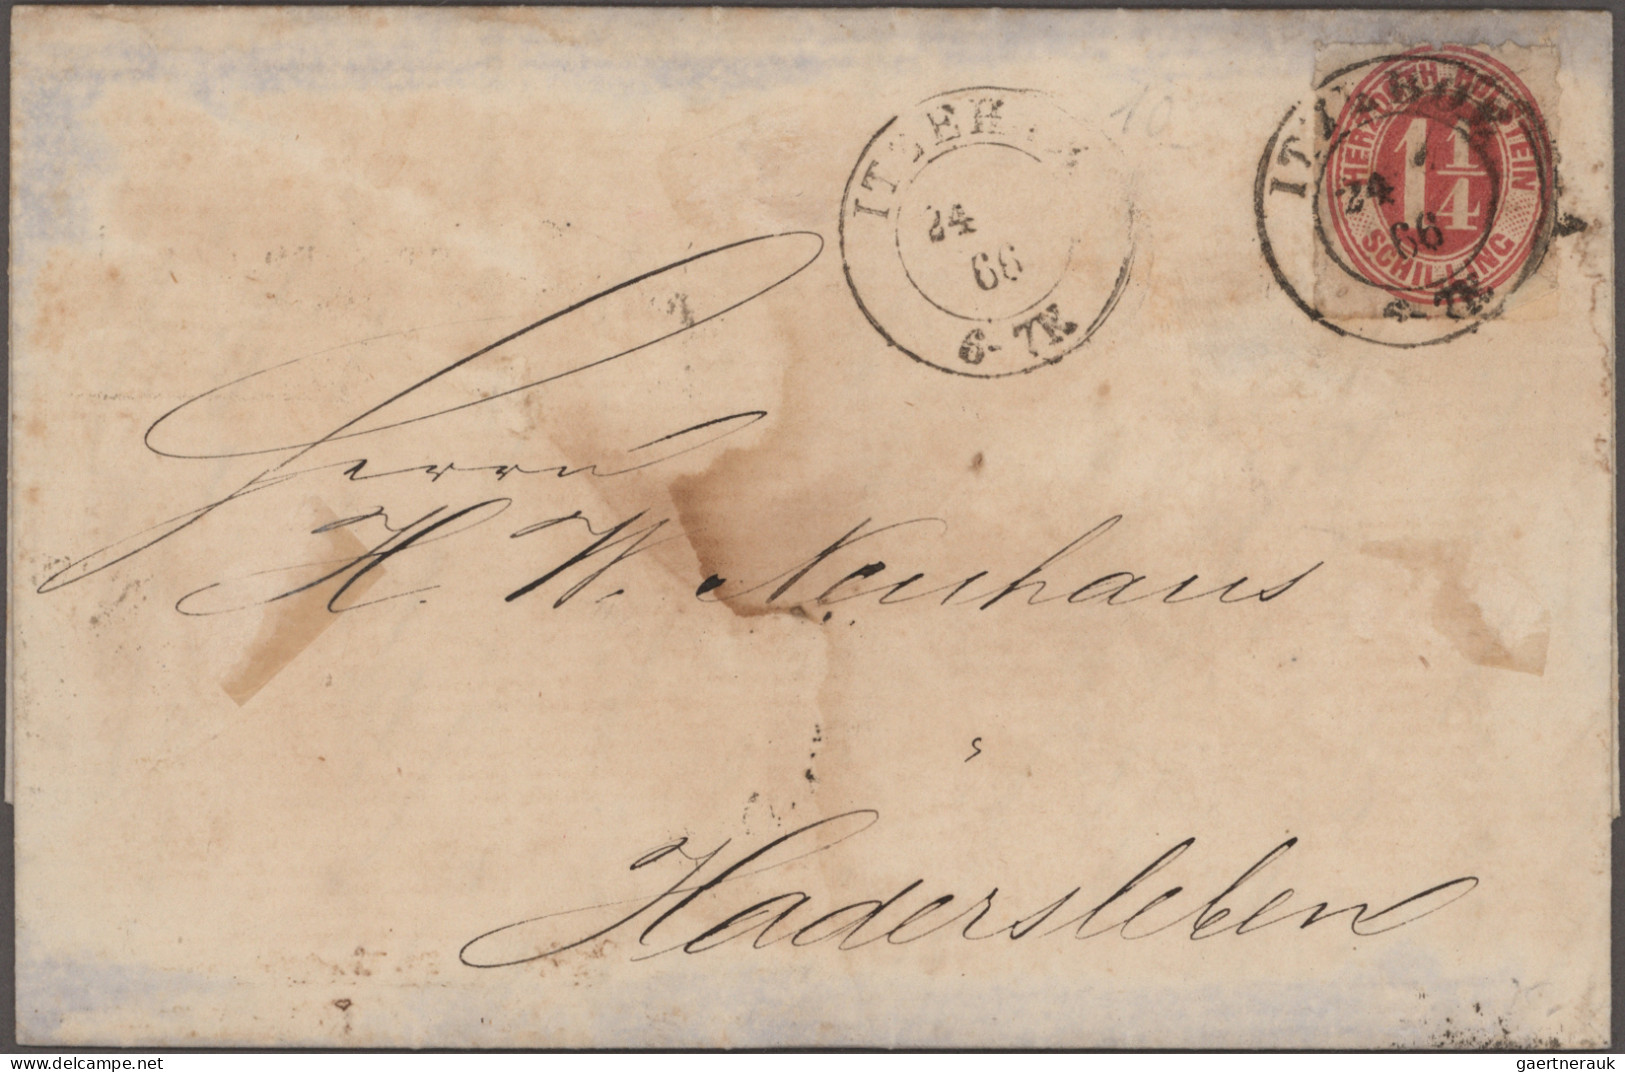 Schleswig-Holstein - Marken und Briefe: 1855/1866 (ca.), schöne Sammlung mit sel